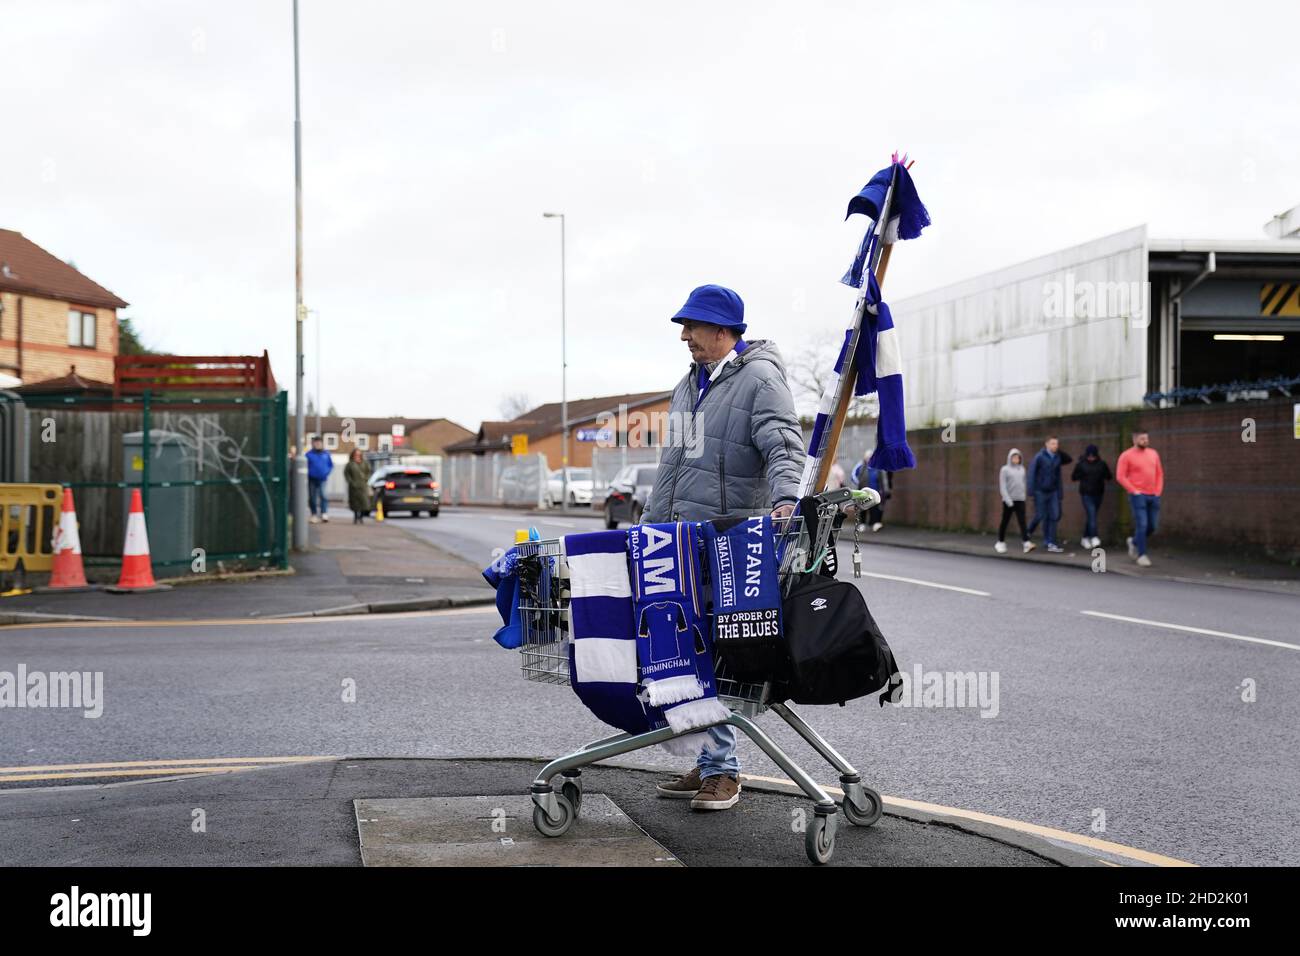 Magasin de Birmingham City vendant des marchandises à l'extérieur du stade avant le match du championnat Sky Bet à St Andrew's, Birmingham.Date de la photo: Dimanche 2 janvier 2022. Banque D'Images